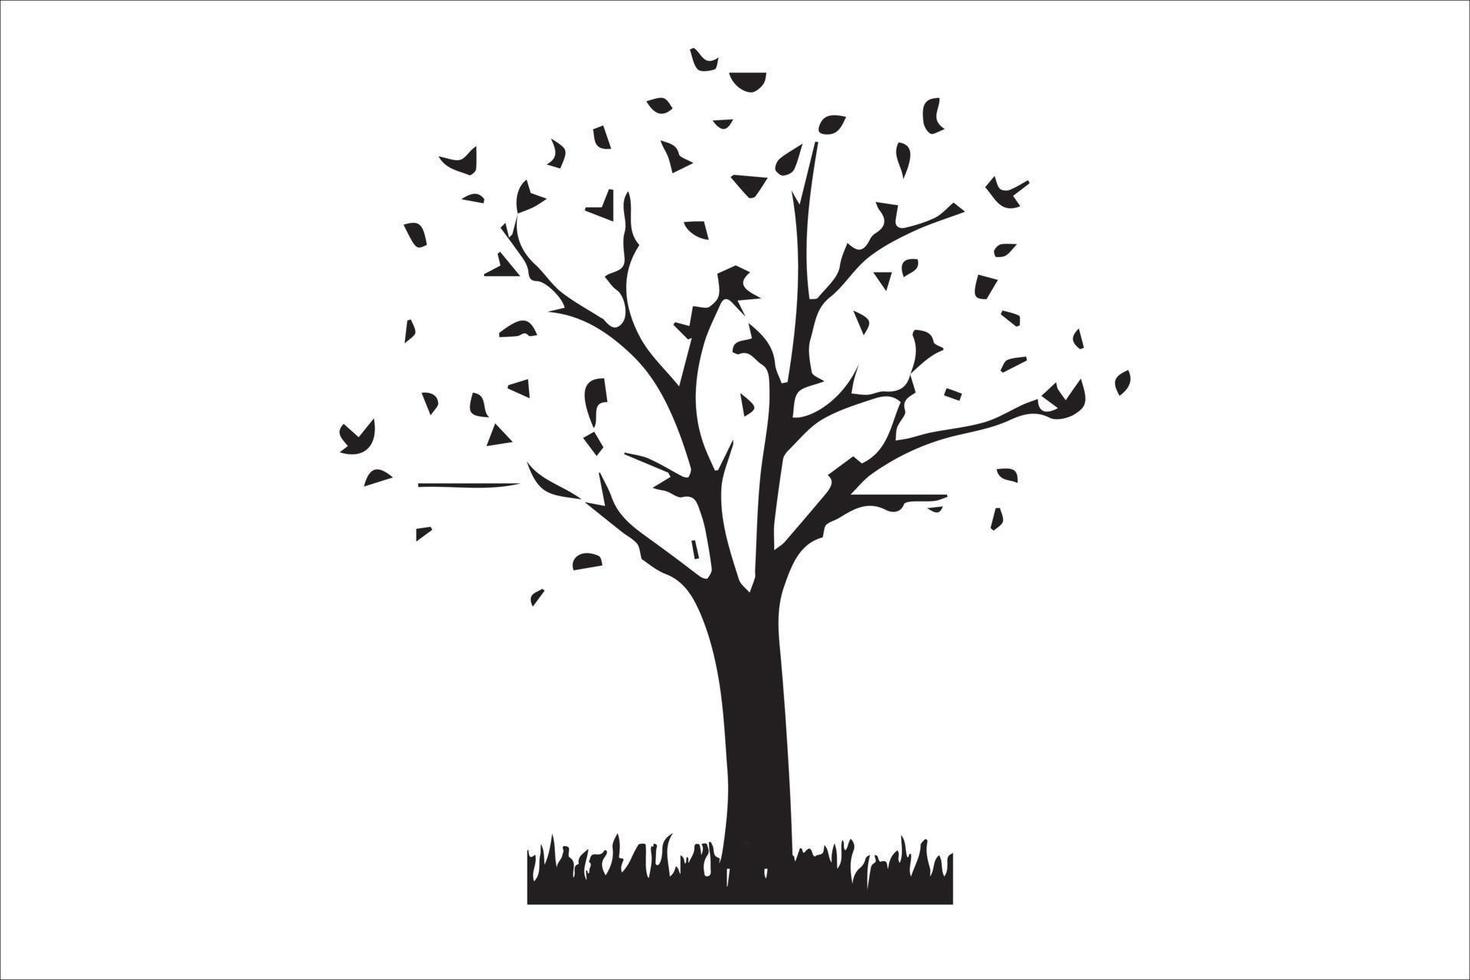 Tree silhouettes - red maple ,sugar maple, oak, poplar, green oak, birch vector